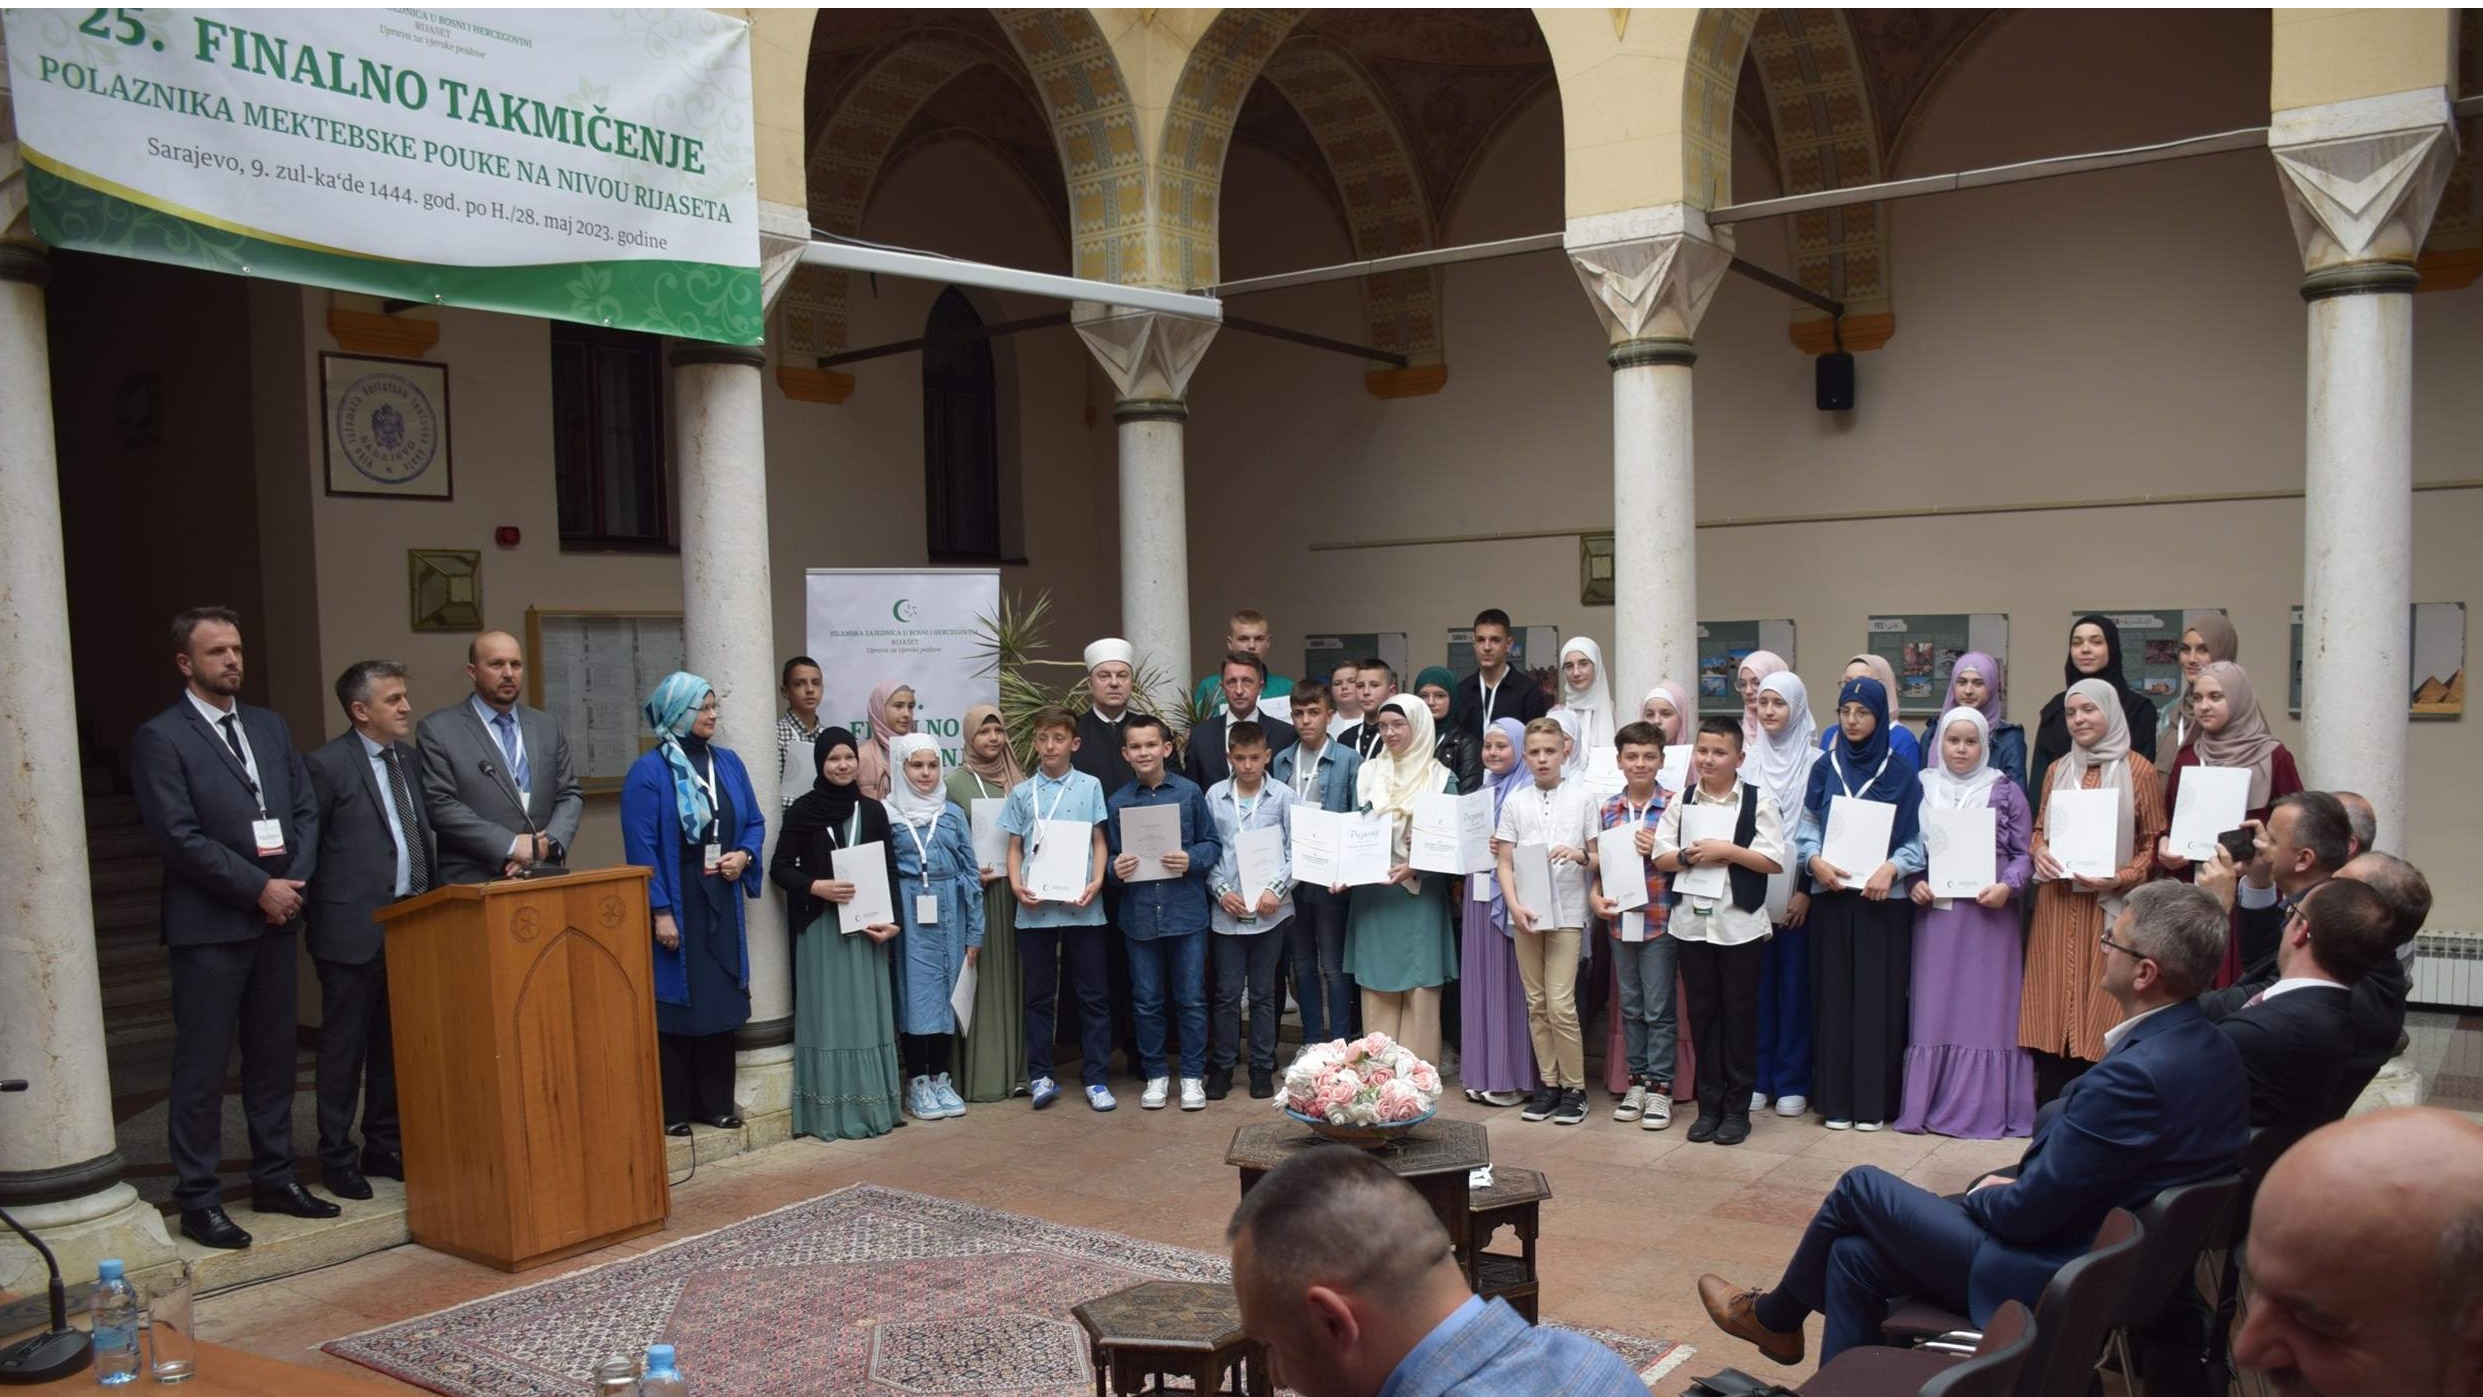 Sarajevo: Proglašeni pobjednici 25. finalnog takmičenja polaznika mektepske pouke